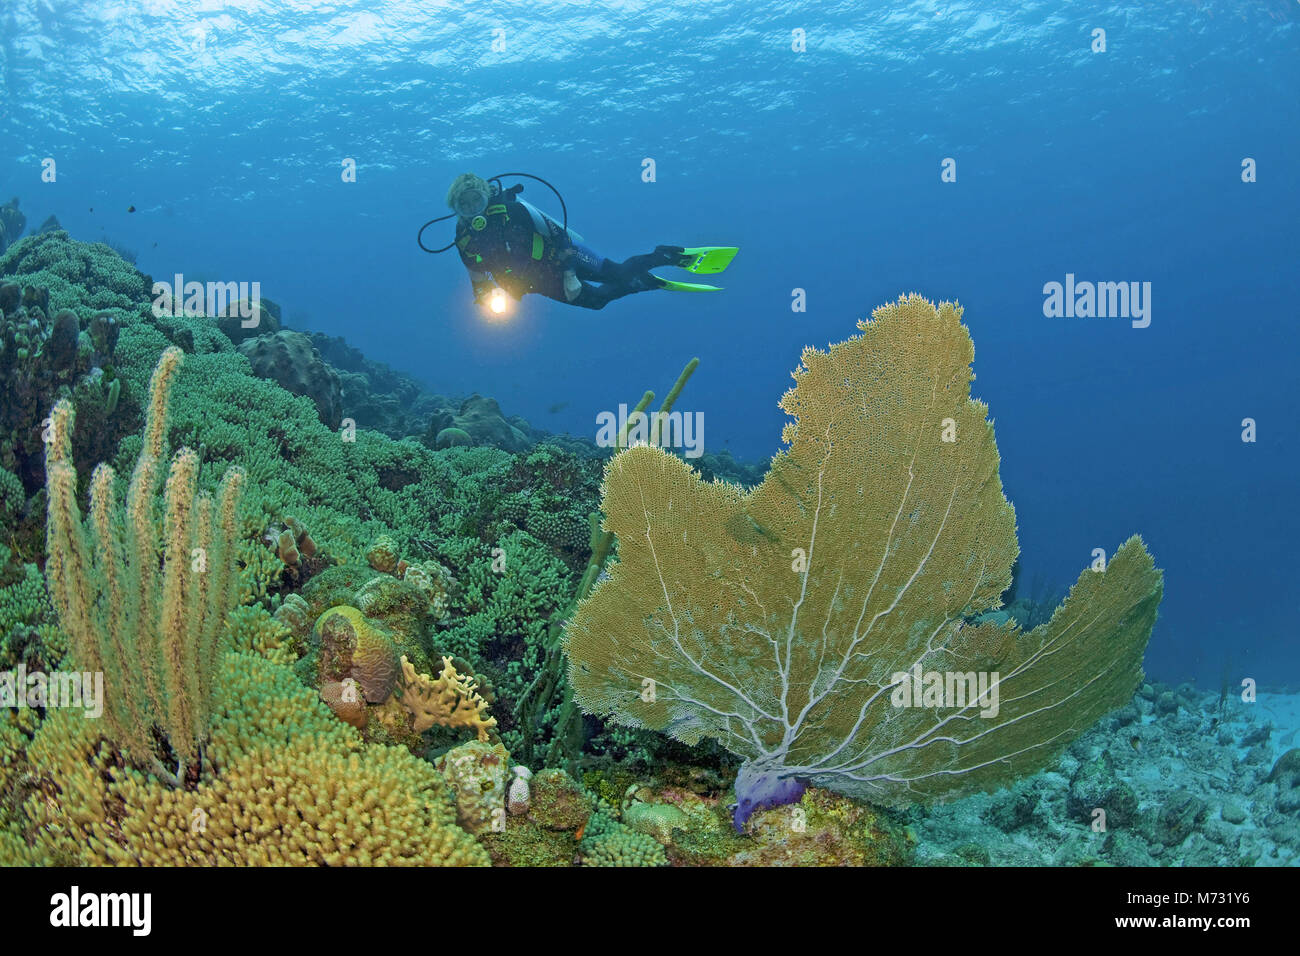 Sommozzatore in una scogliera corallina caraibica con un gigante seafan (Gorgonia ventalina), Curacao, Antille olandesi, Caraibi, il Mar dei Caraibi Foto Stock